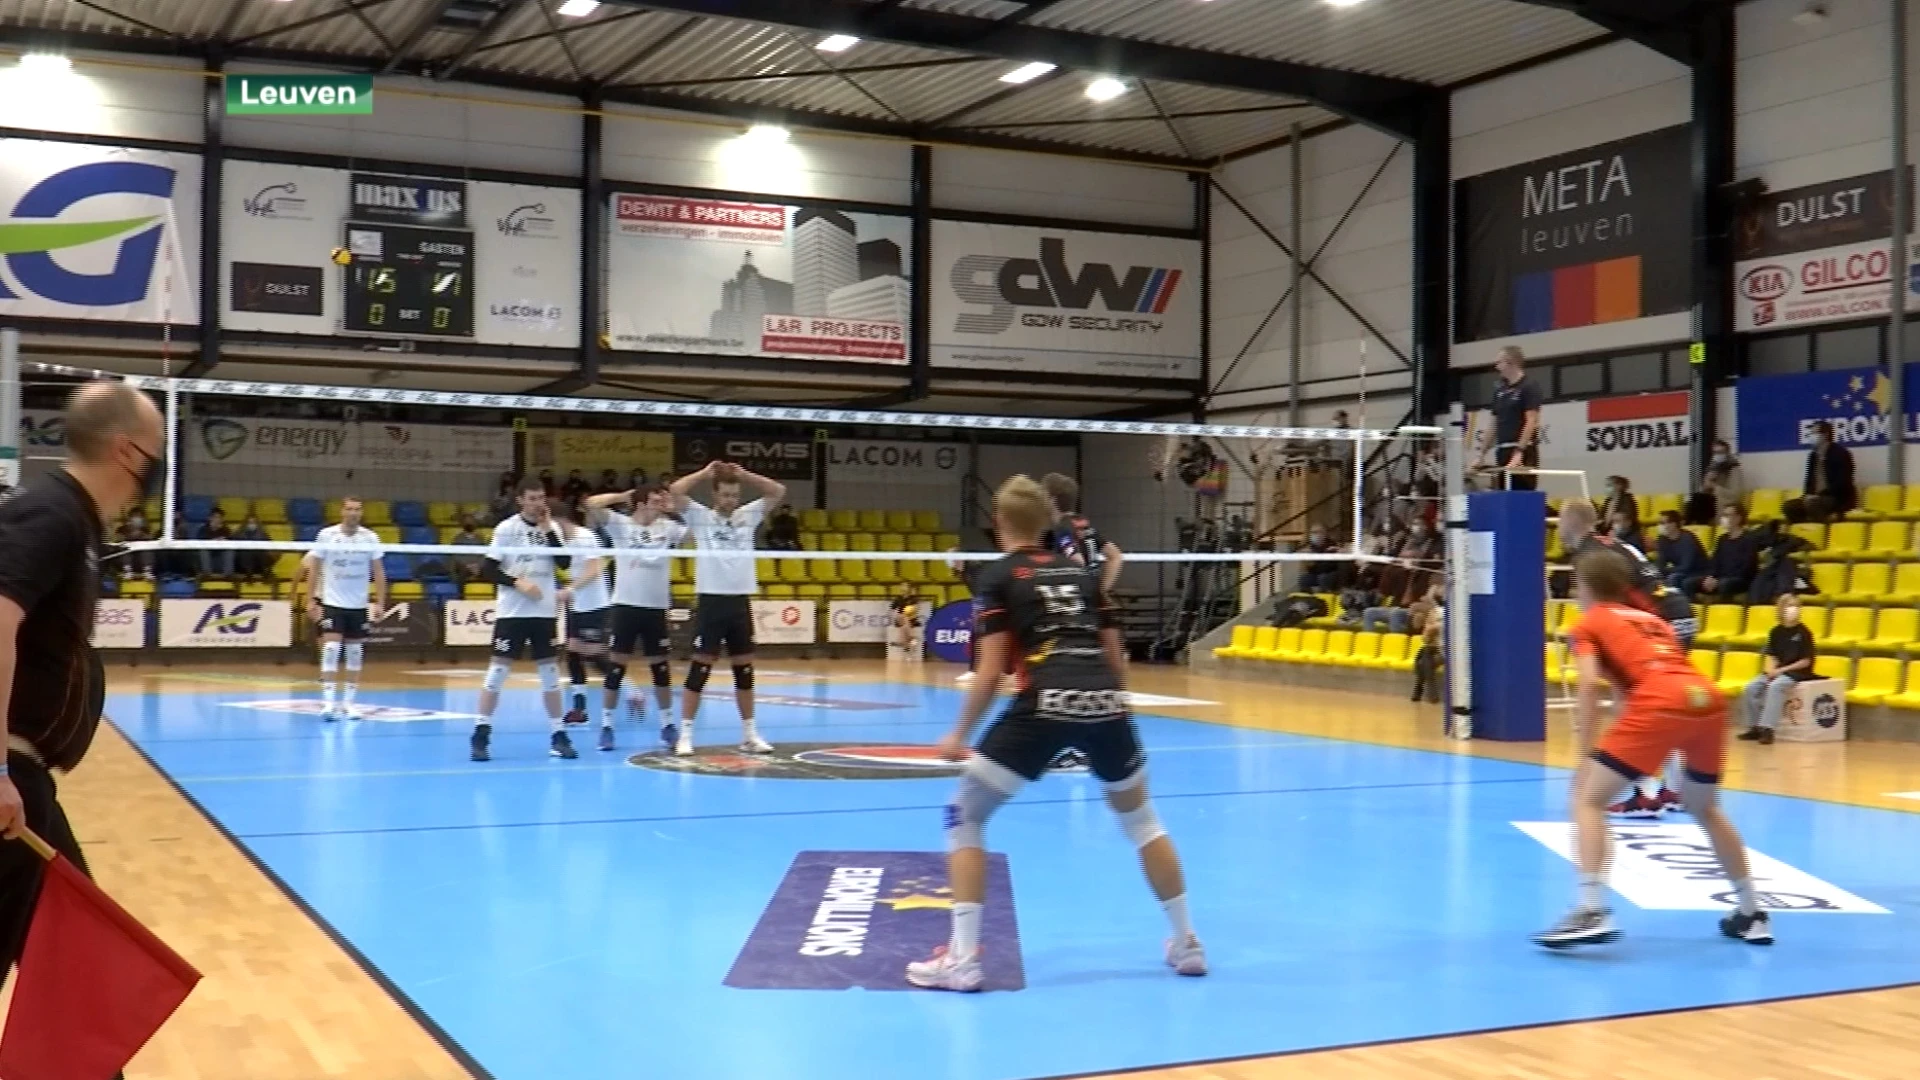 VHL blikt Gent in in volleycompetitie, maar "In de beker krijgen we een unieke kans"